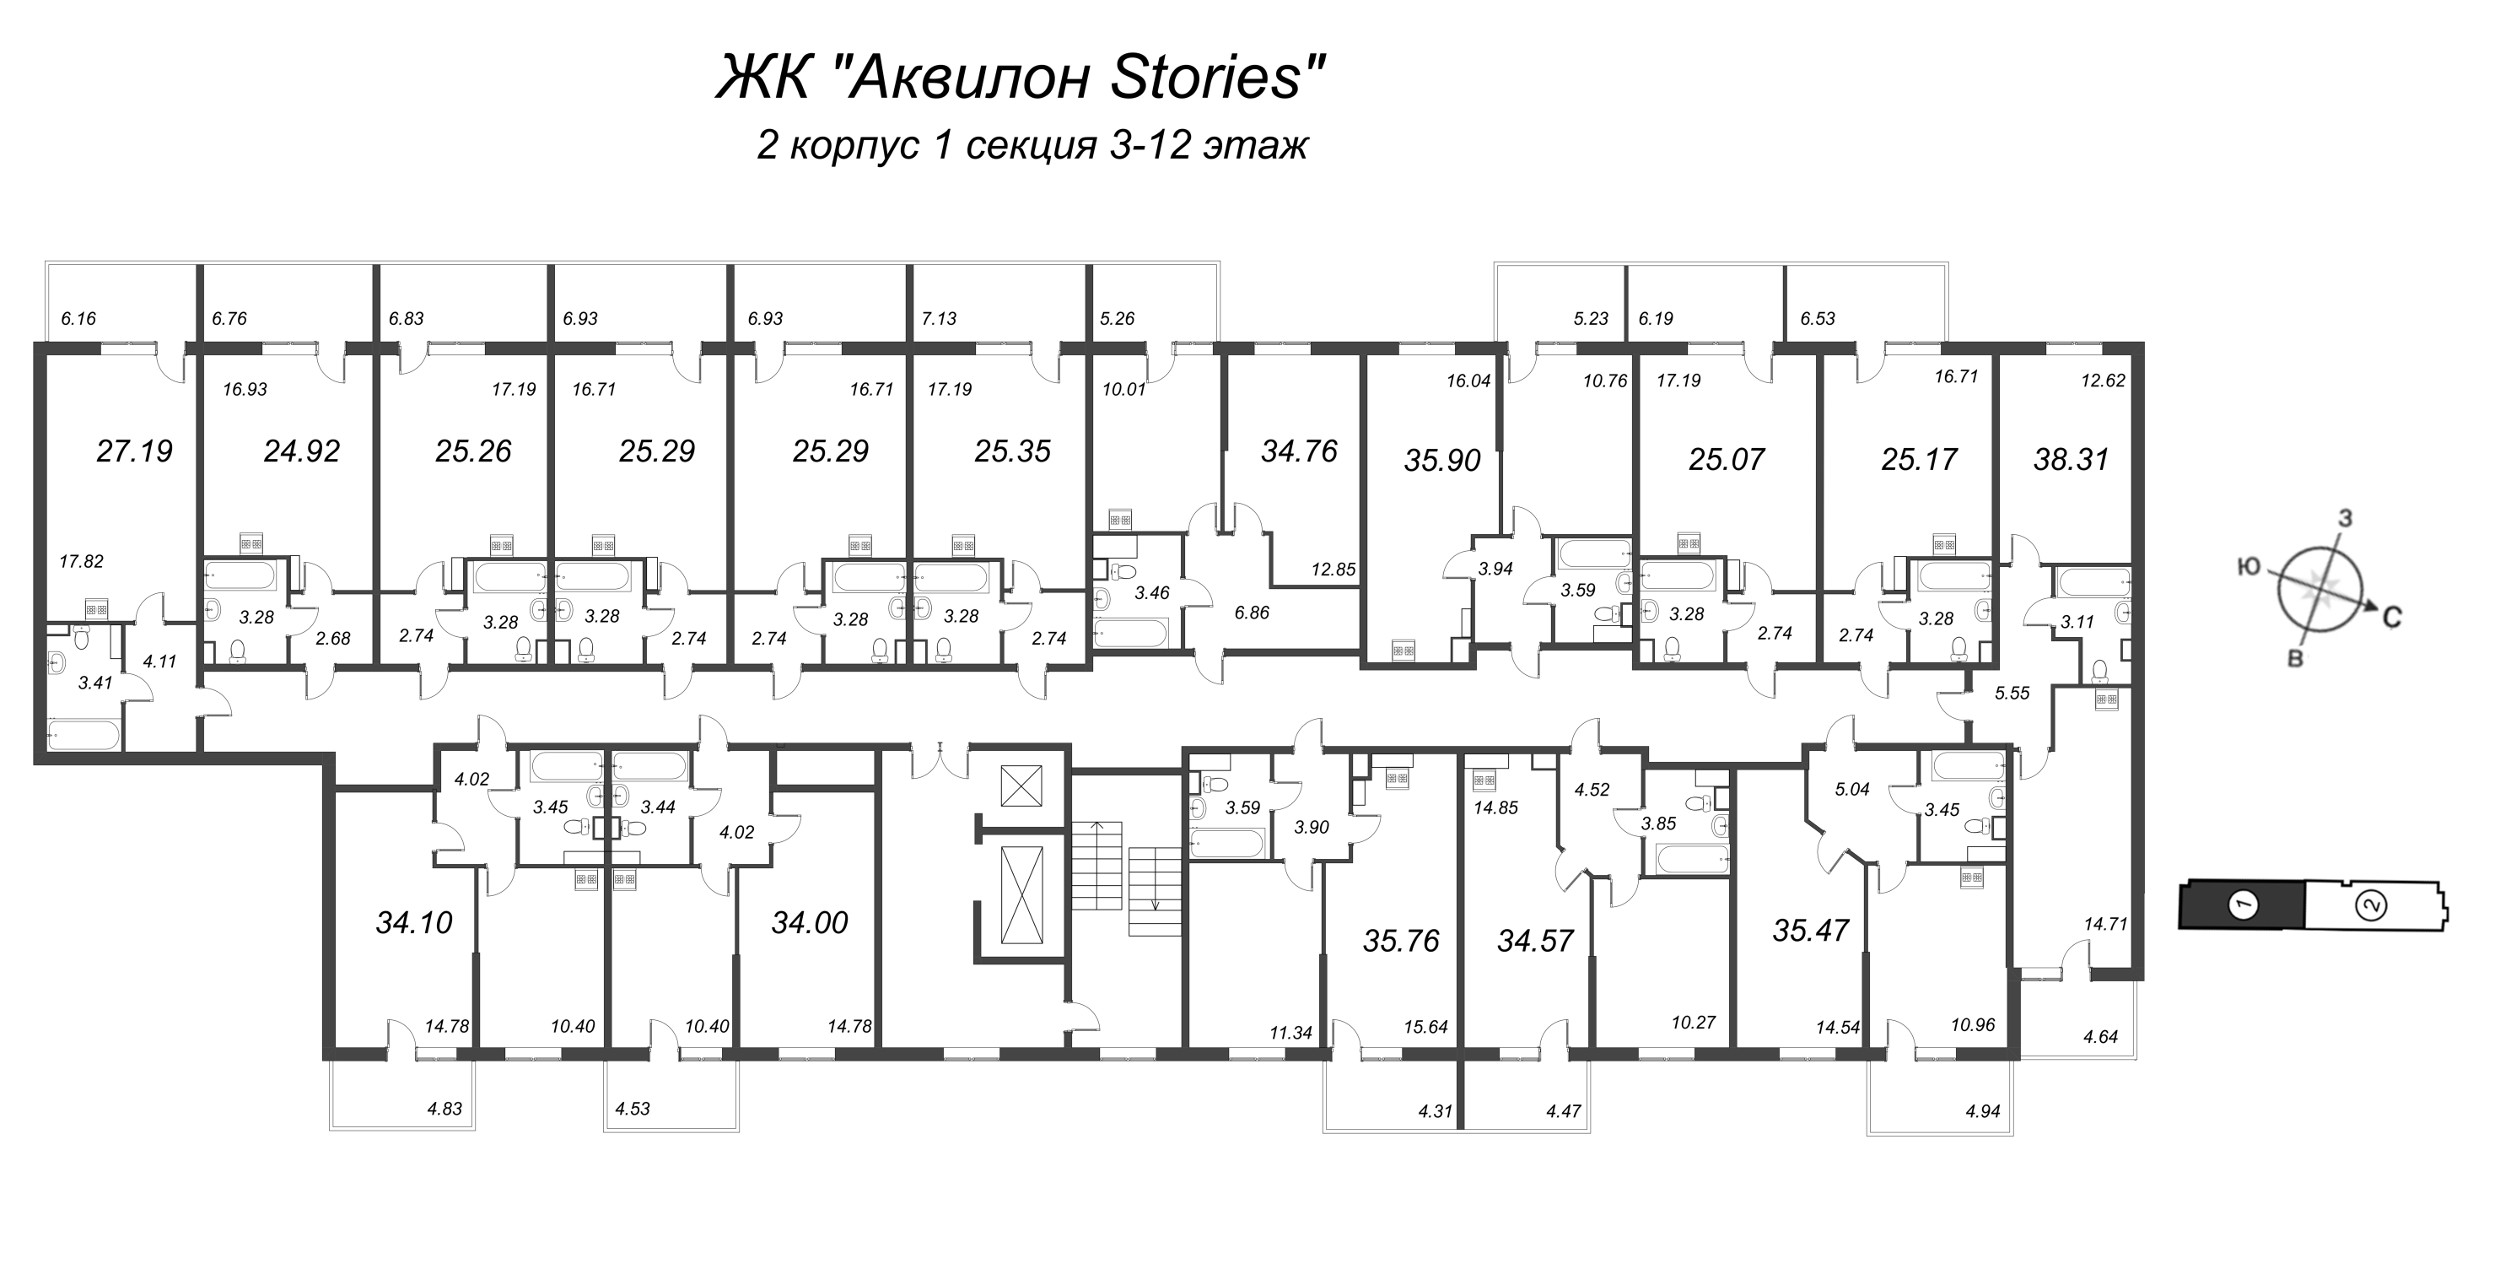 Квартира-студия, 24.8 м² в ЖК "Аквилон Stories" - планировка этажа